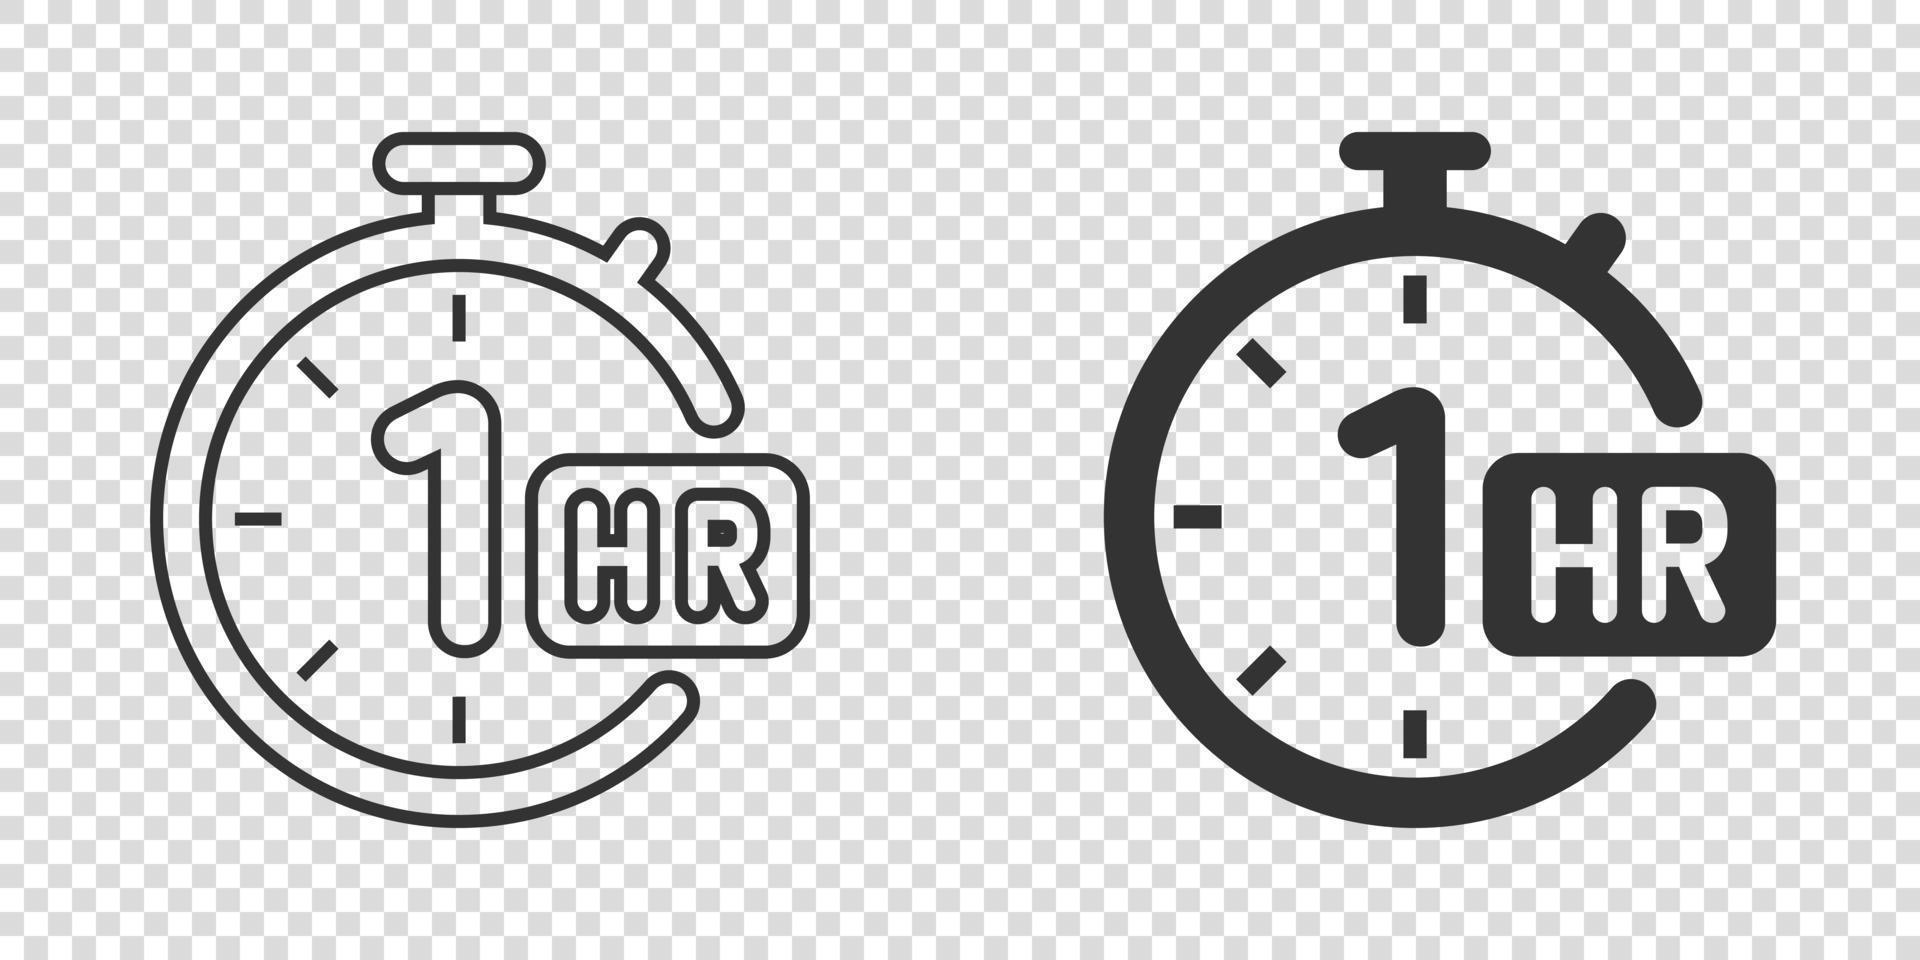 Icono de reloj de 1 hora en estilo plano. Ilustración de vector de cuenta regresiva de temporizador sobre fondo aislado. concepto de negocio de signo de medida de tiempo.